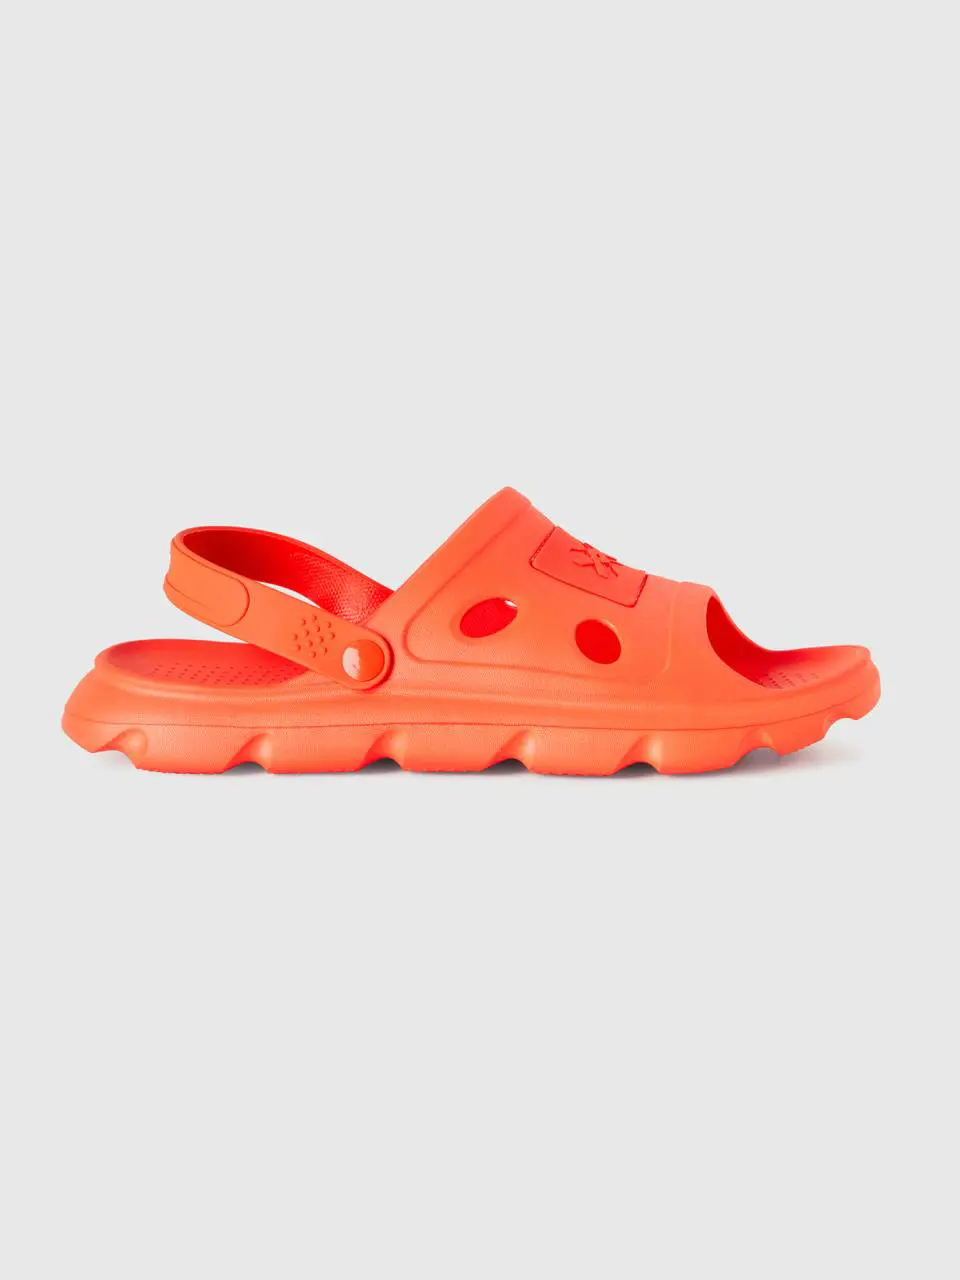 Benetton orange sandals in lightweight rubber. 1